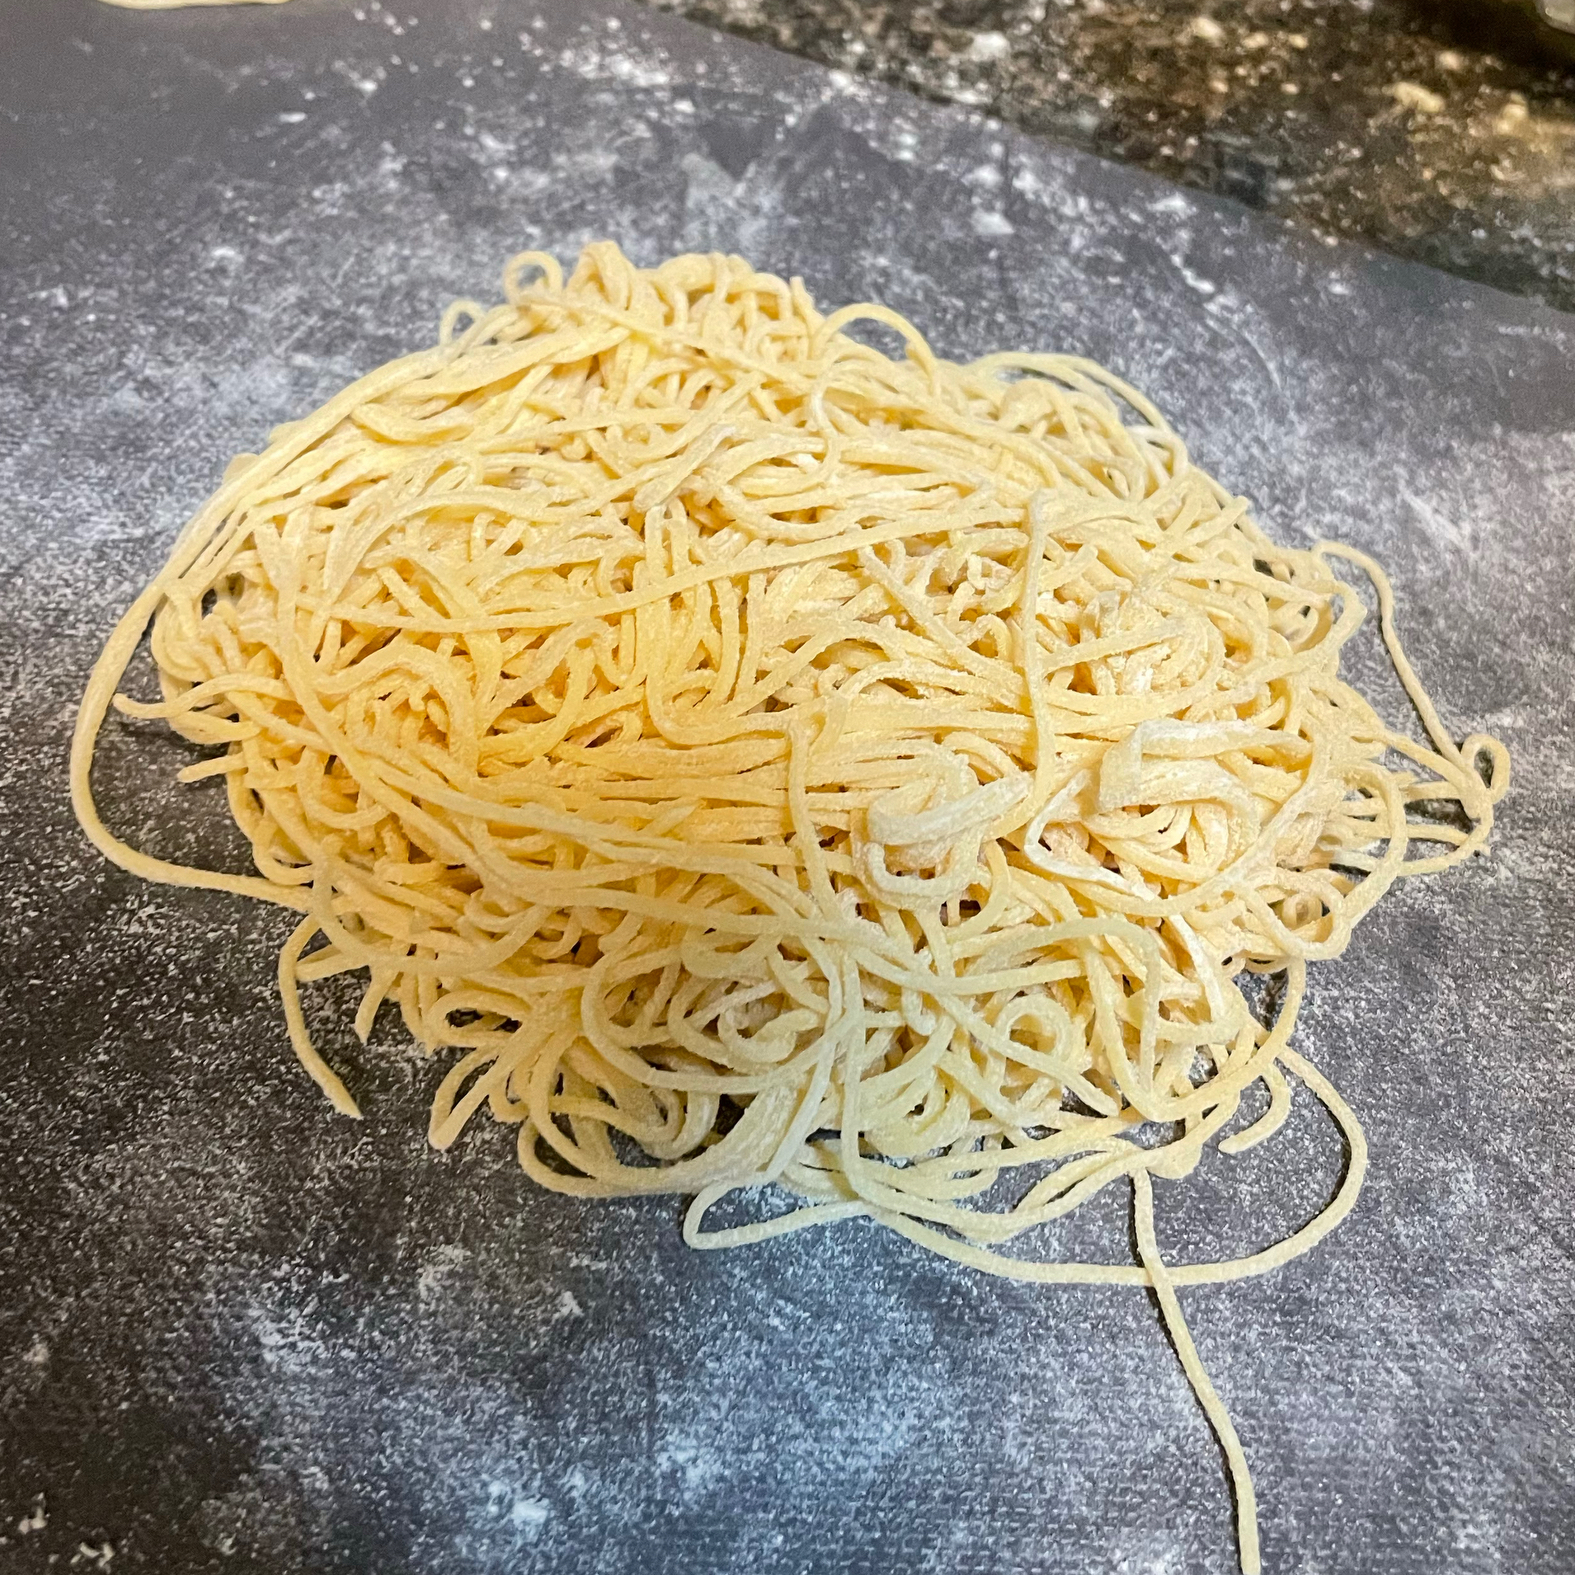 自制鸡蛋意大利面 Homemade Pasta